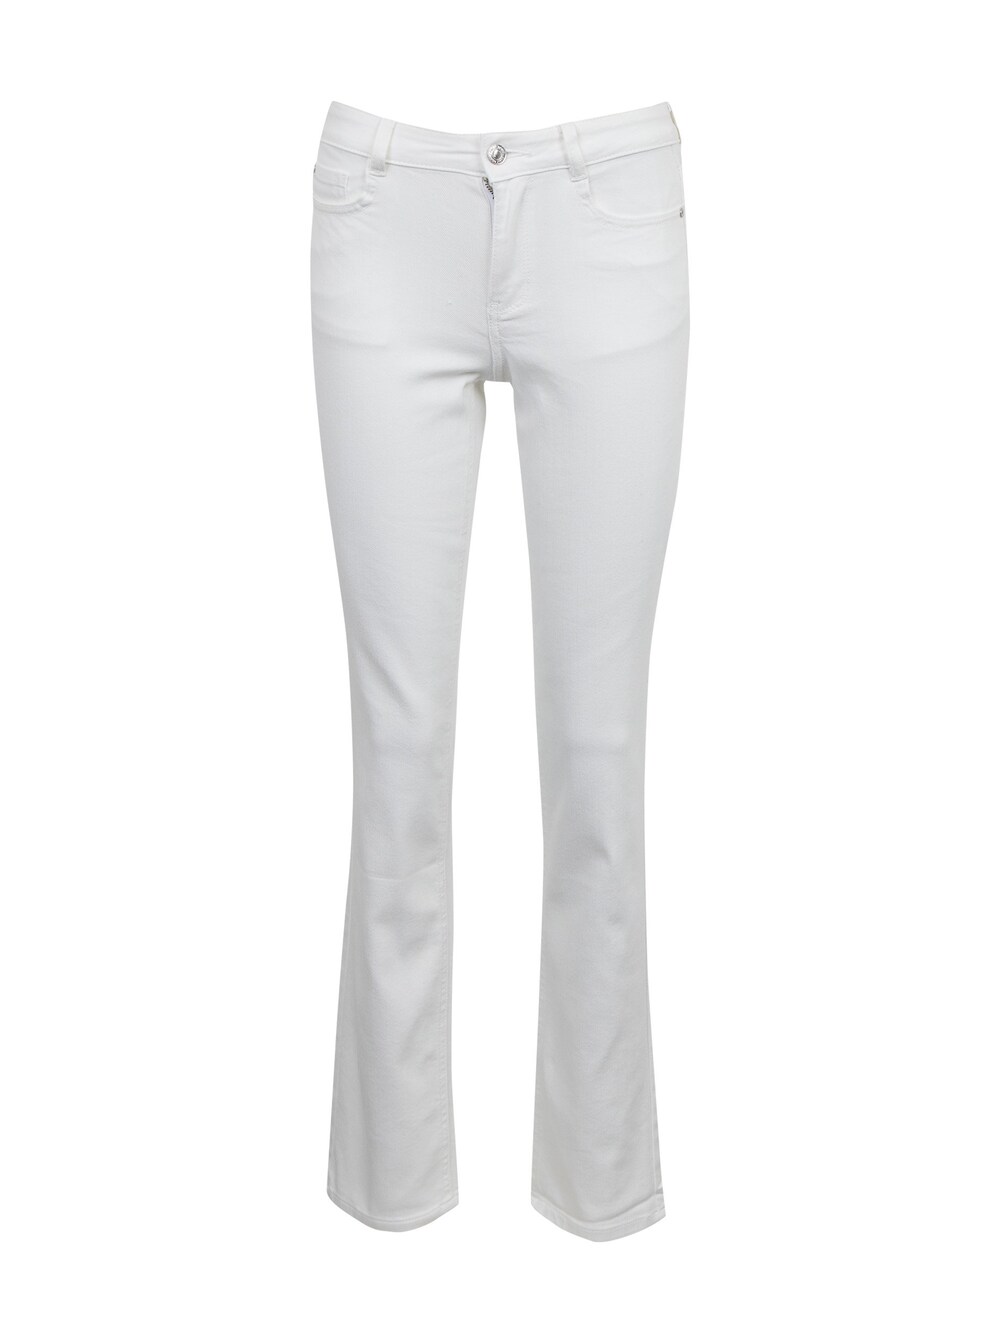 Обычные джинсы Orsay, белый